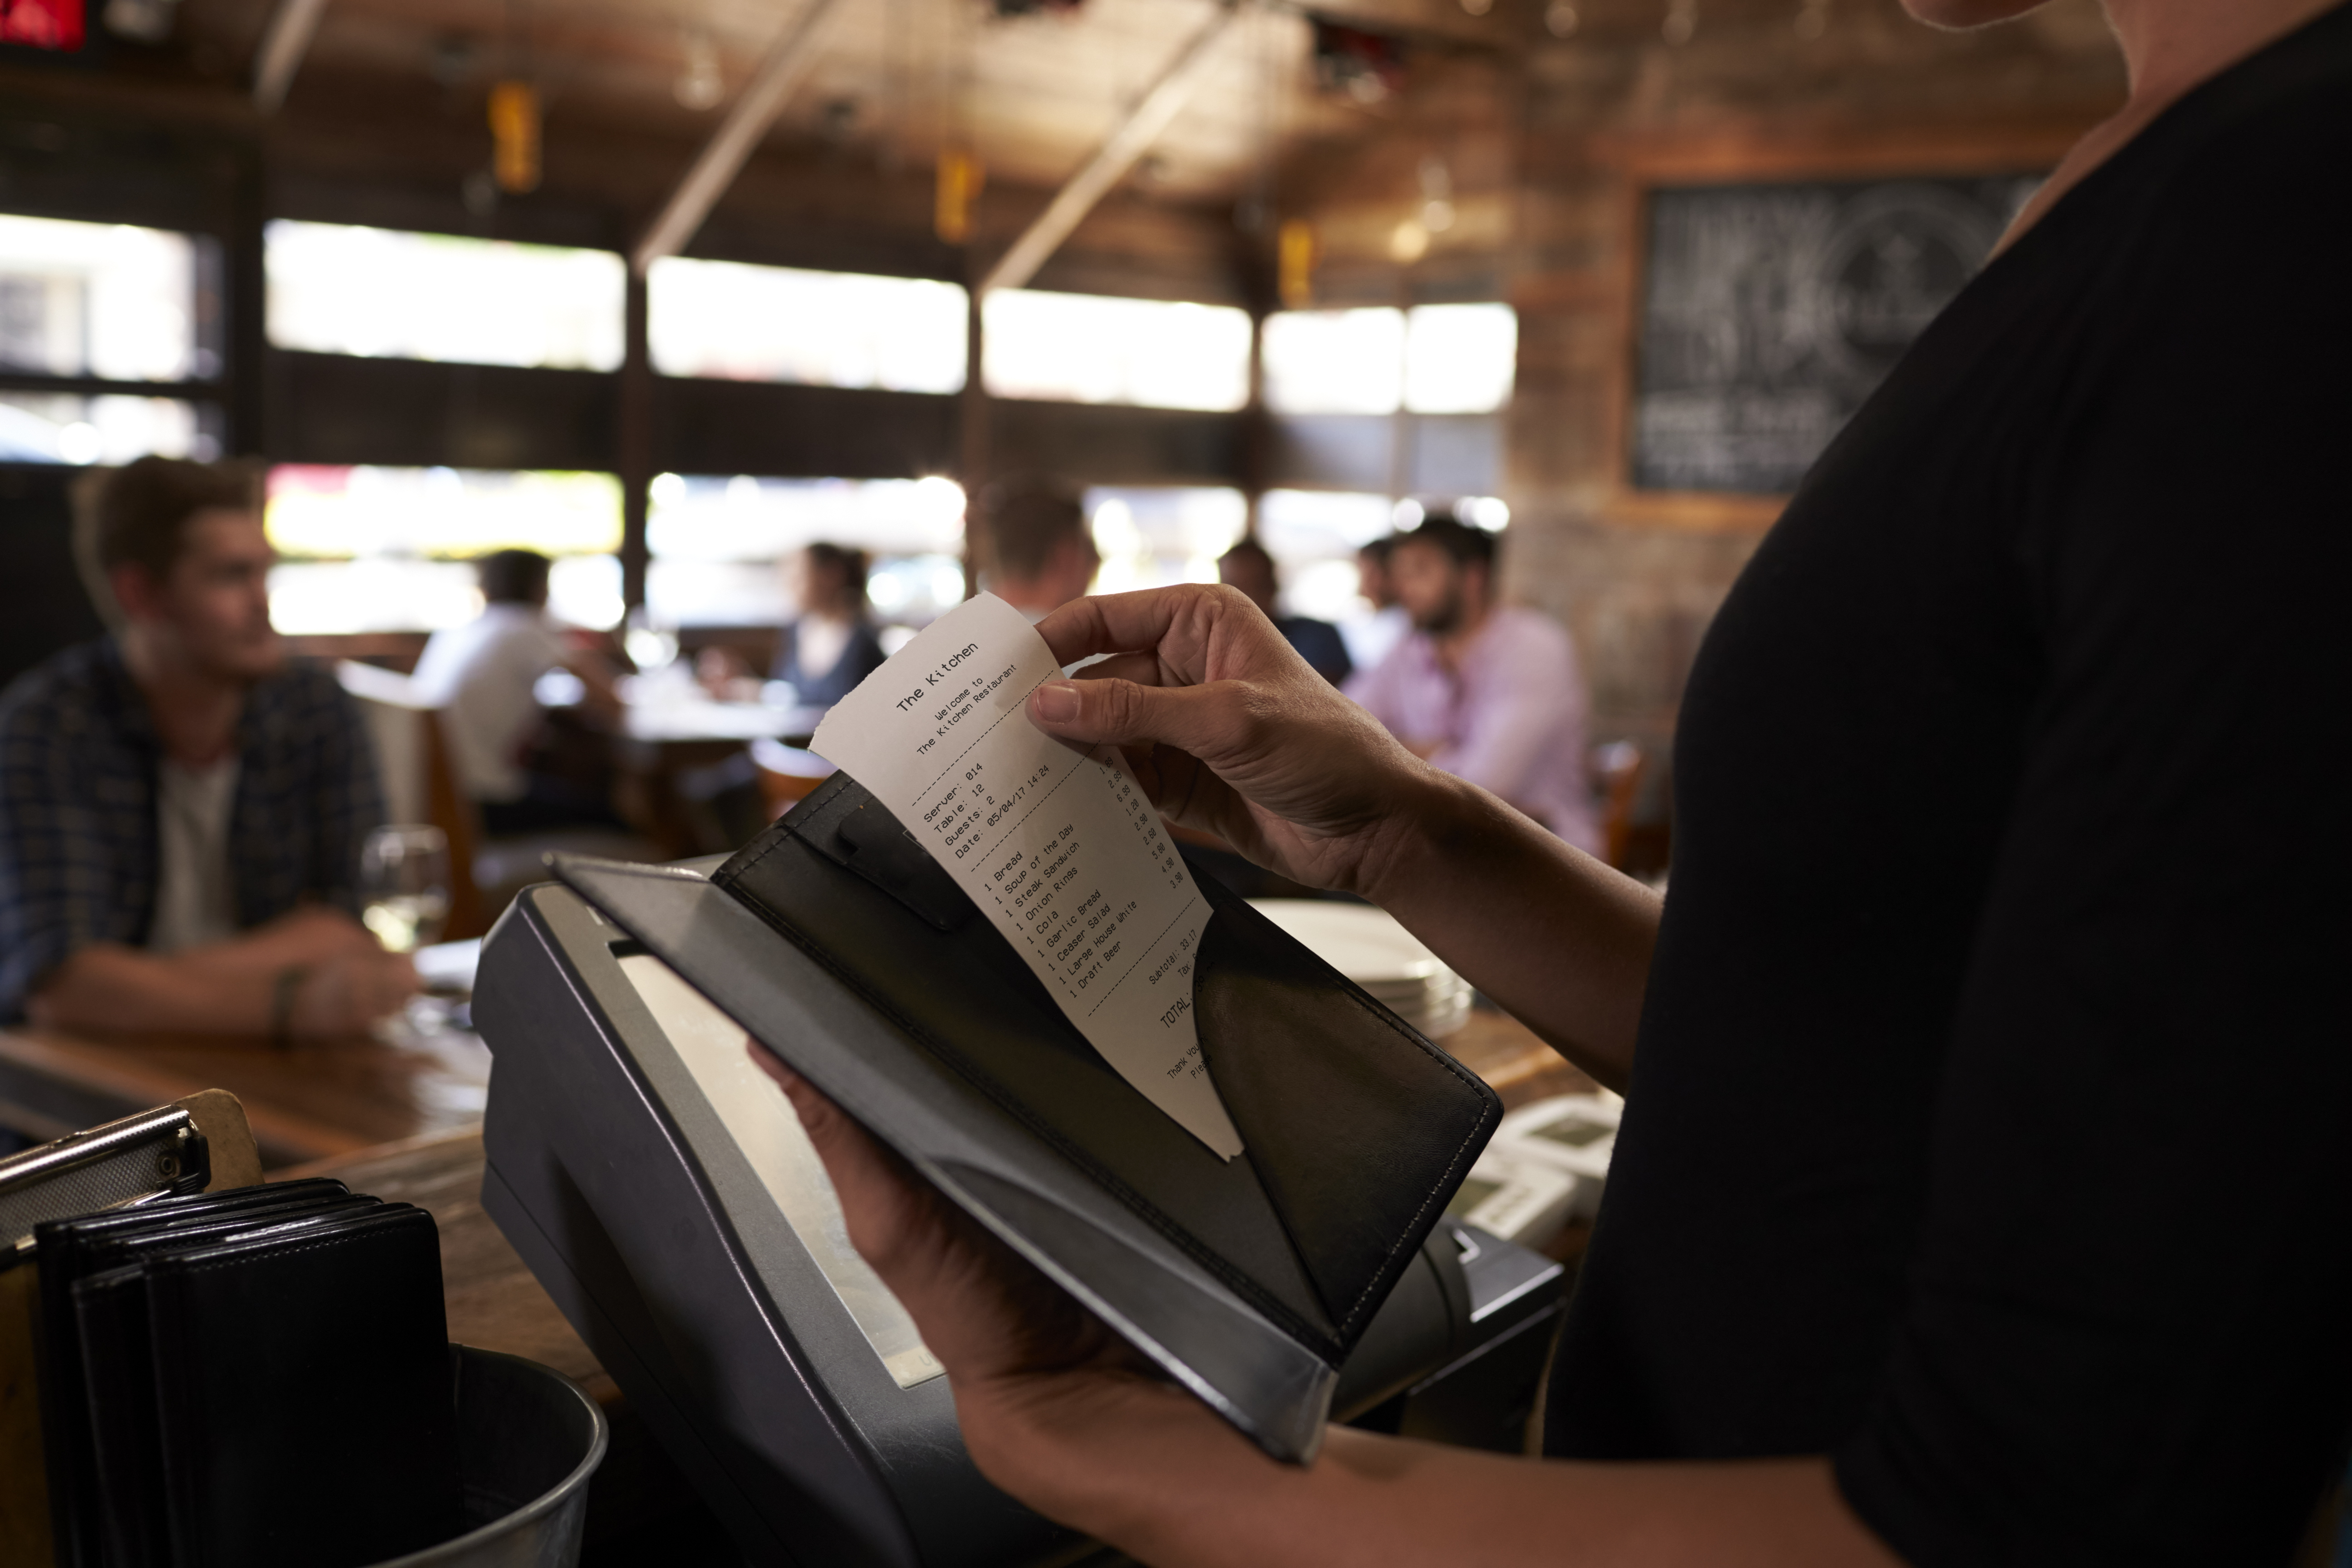 A restaurant worker holding a bill | Source: Shutterstock